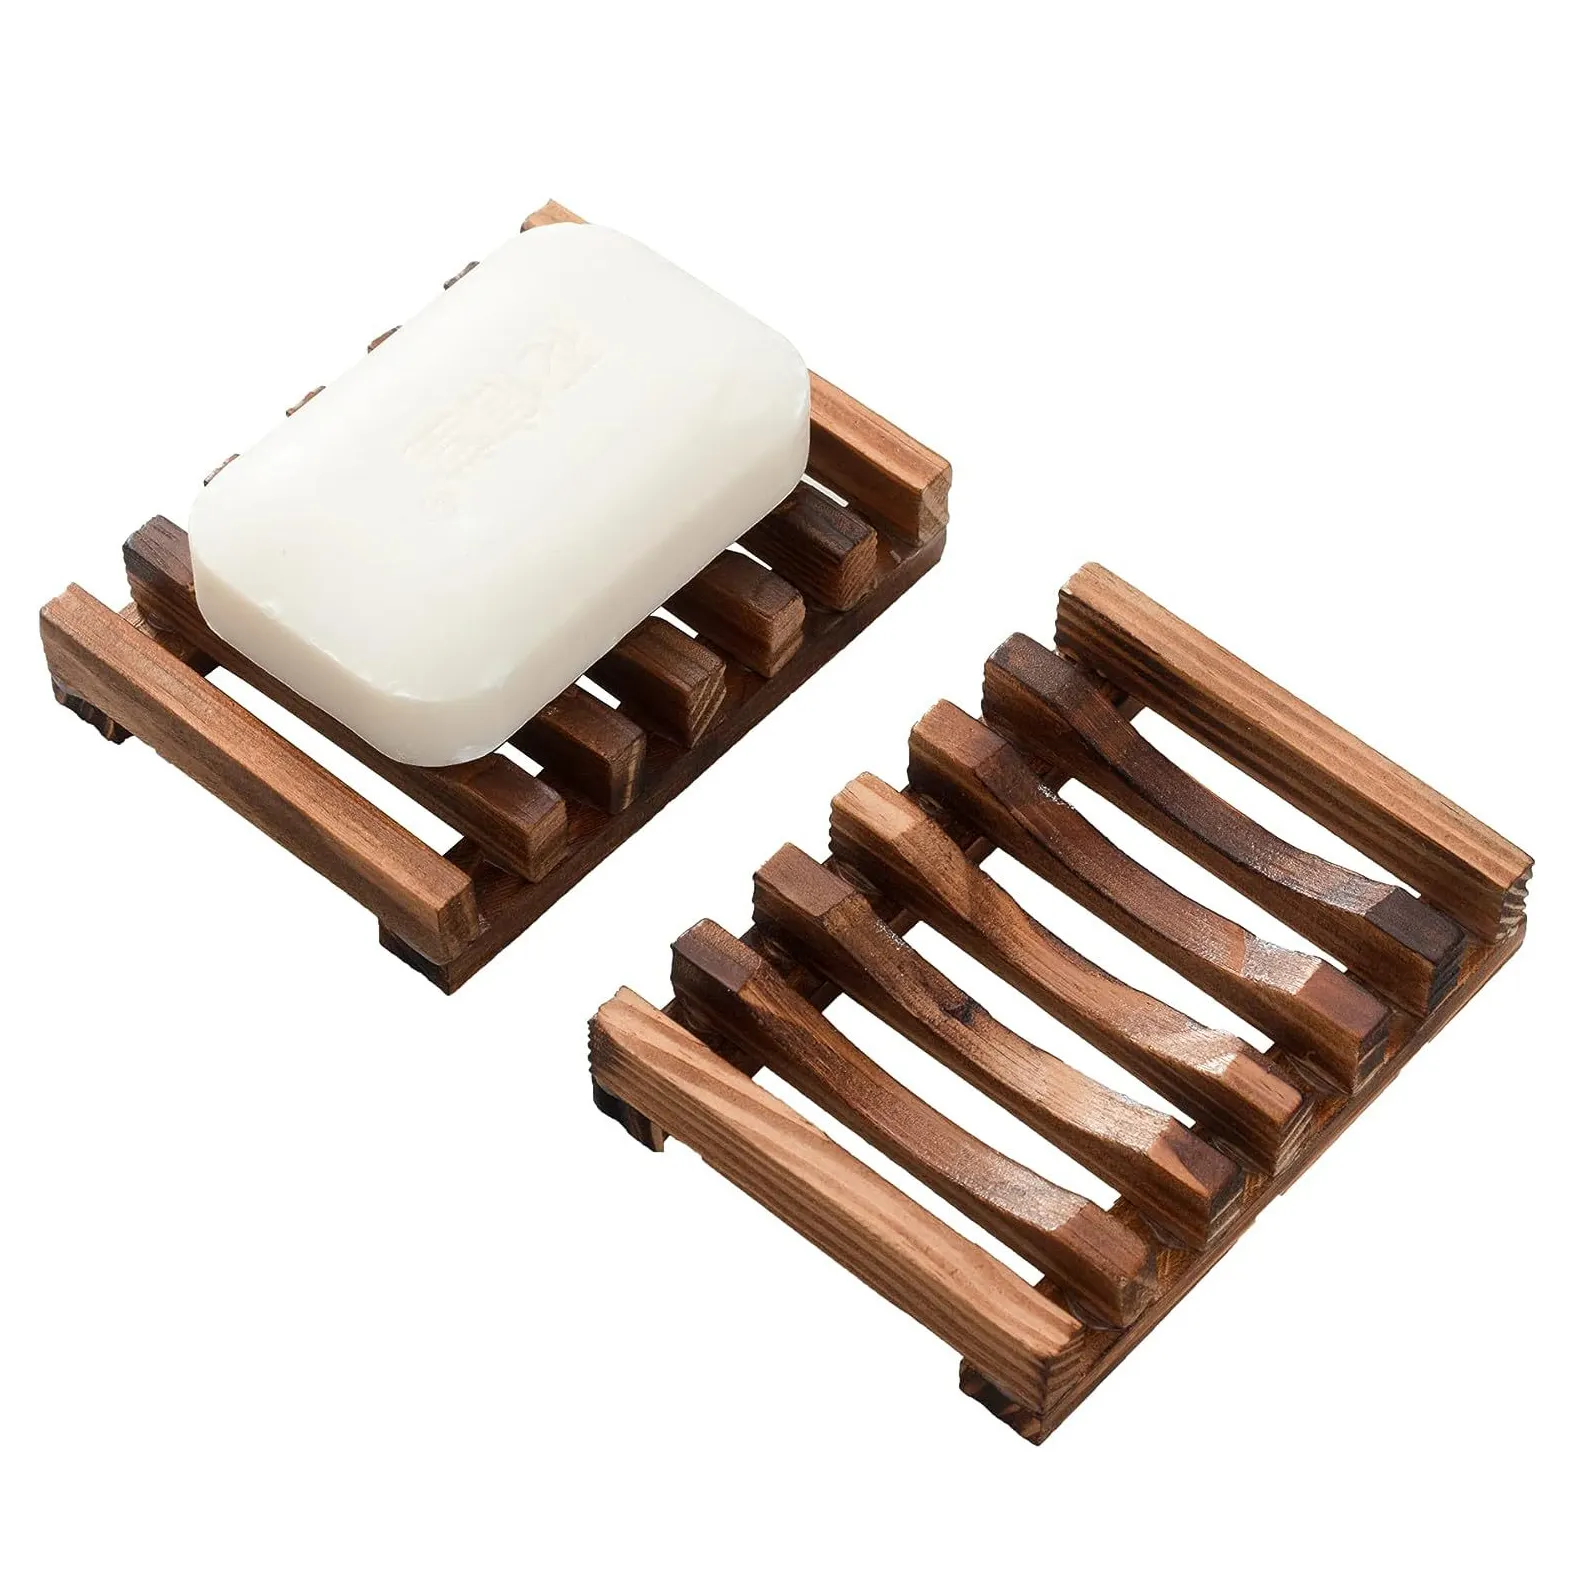 Аксессуары для ванной комнаты XZX644, оптовая продажа, Бамбуковая деревянная подставка для мыла из тикера, поднос для мыла для душа, деревянный держатель для мыла